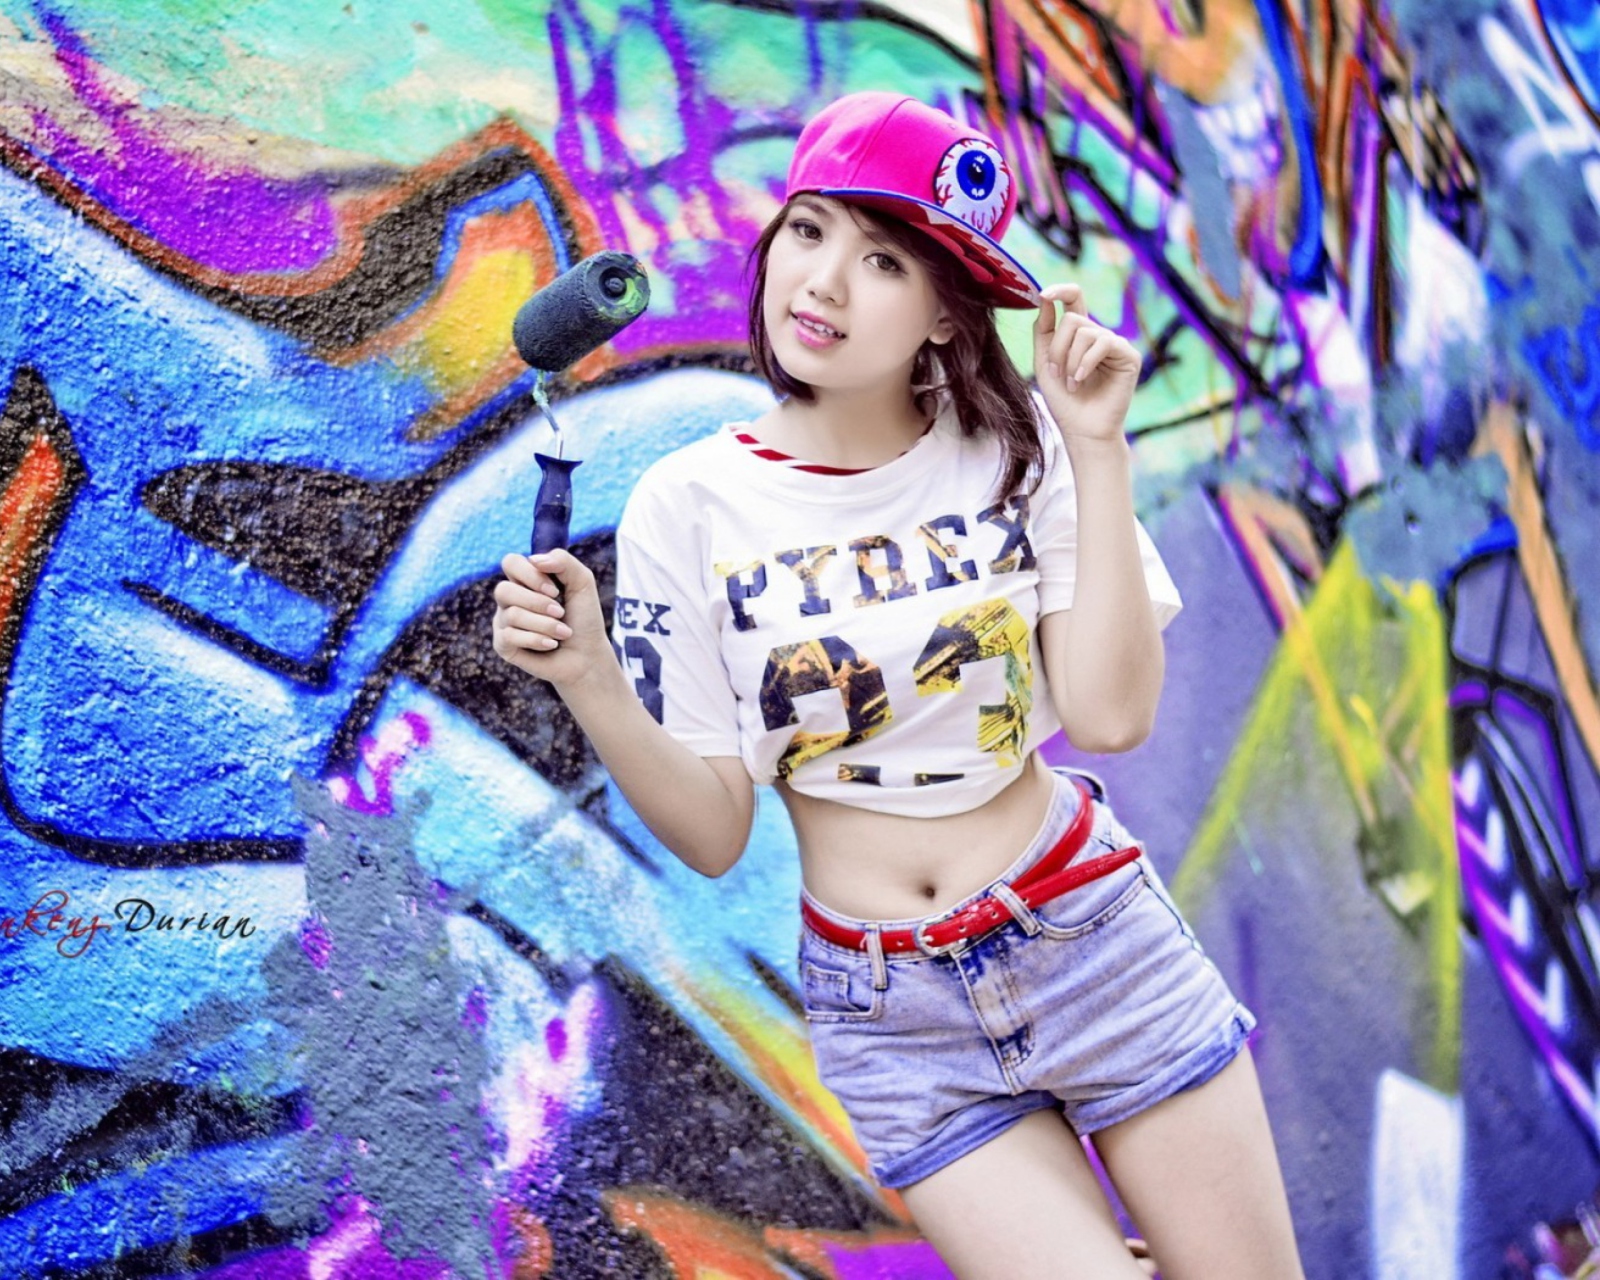 Обои Cute Asian Graffiti Artist Girl 1600x1280